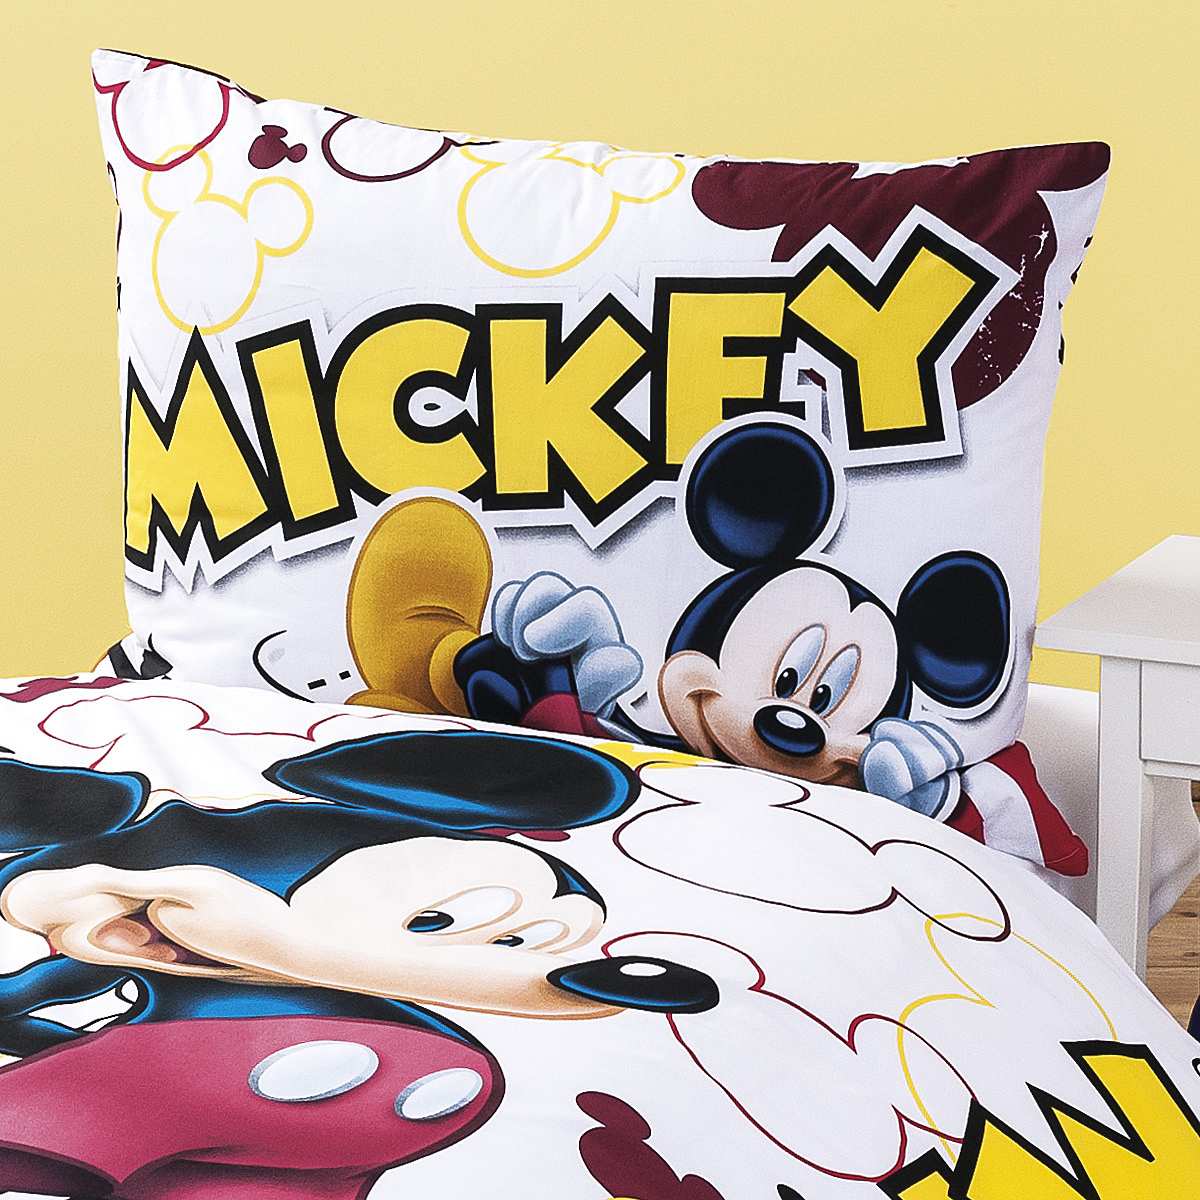 Dětské bavlněné povlečení Mickey 2014, 140 x 200 cm, 70 x 90 cm